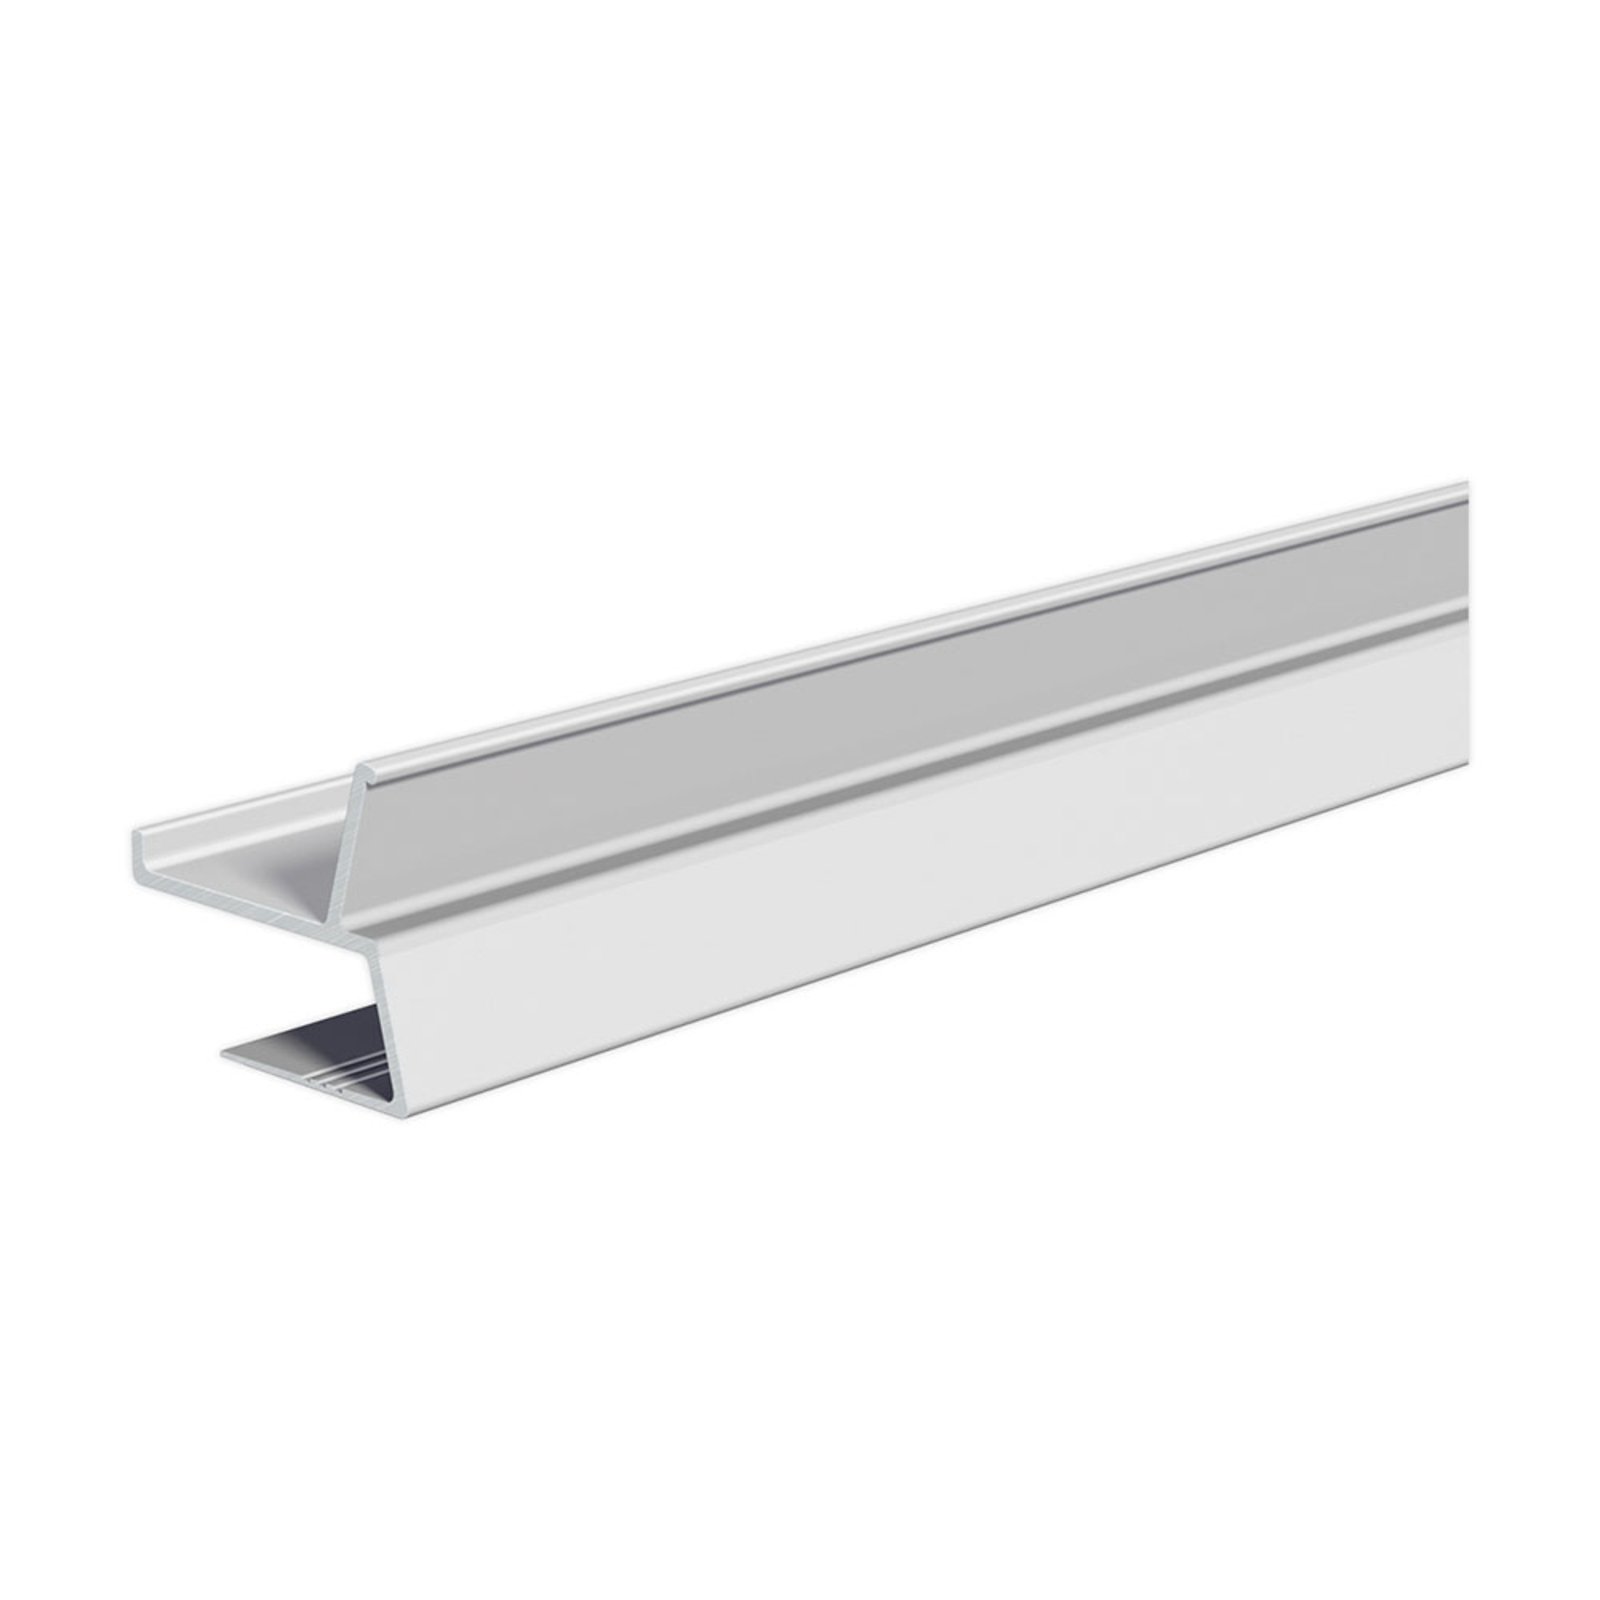 EVN APTBU aluminium profile, to wall, 200 cm